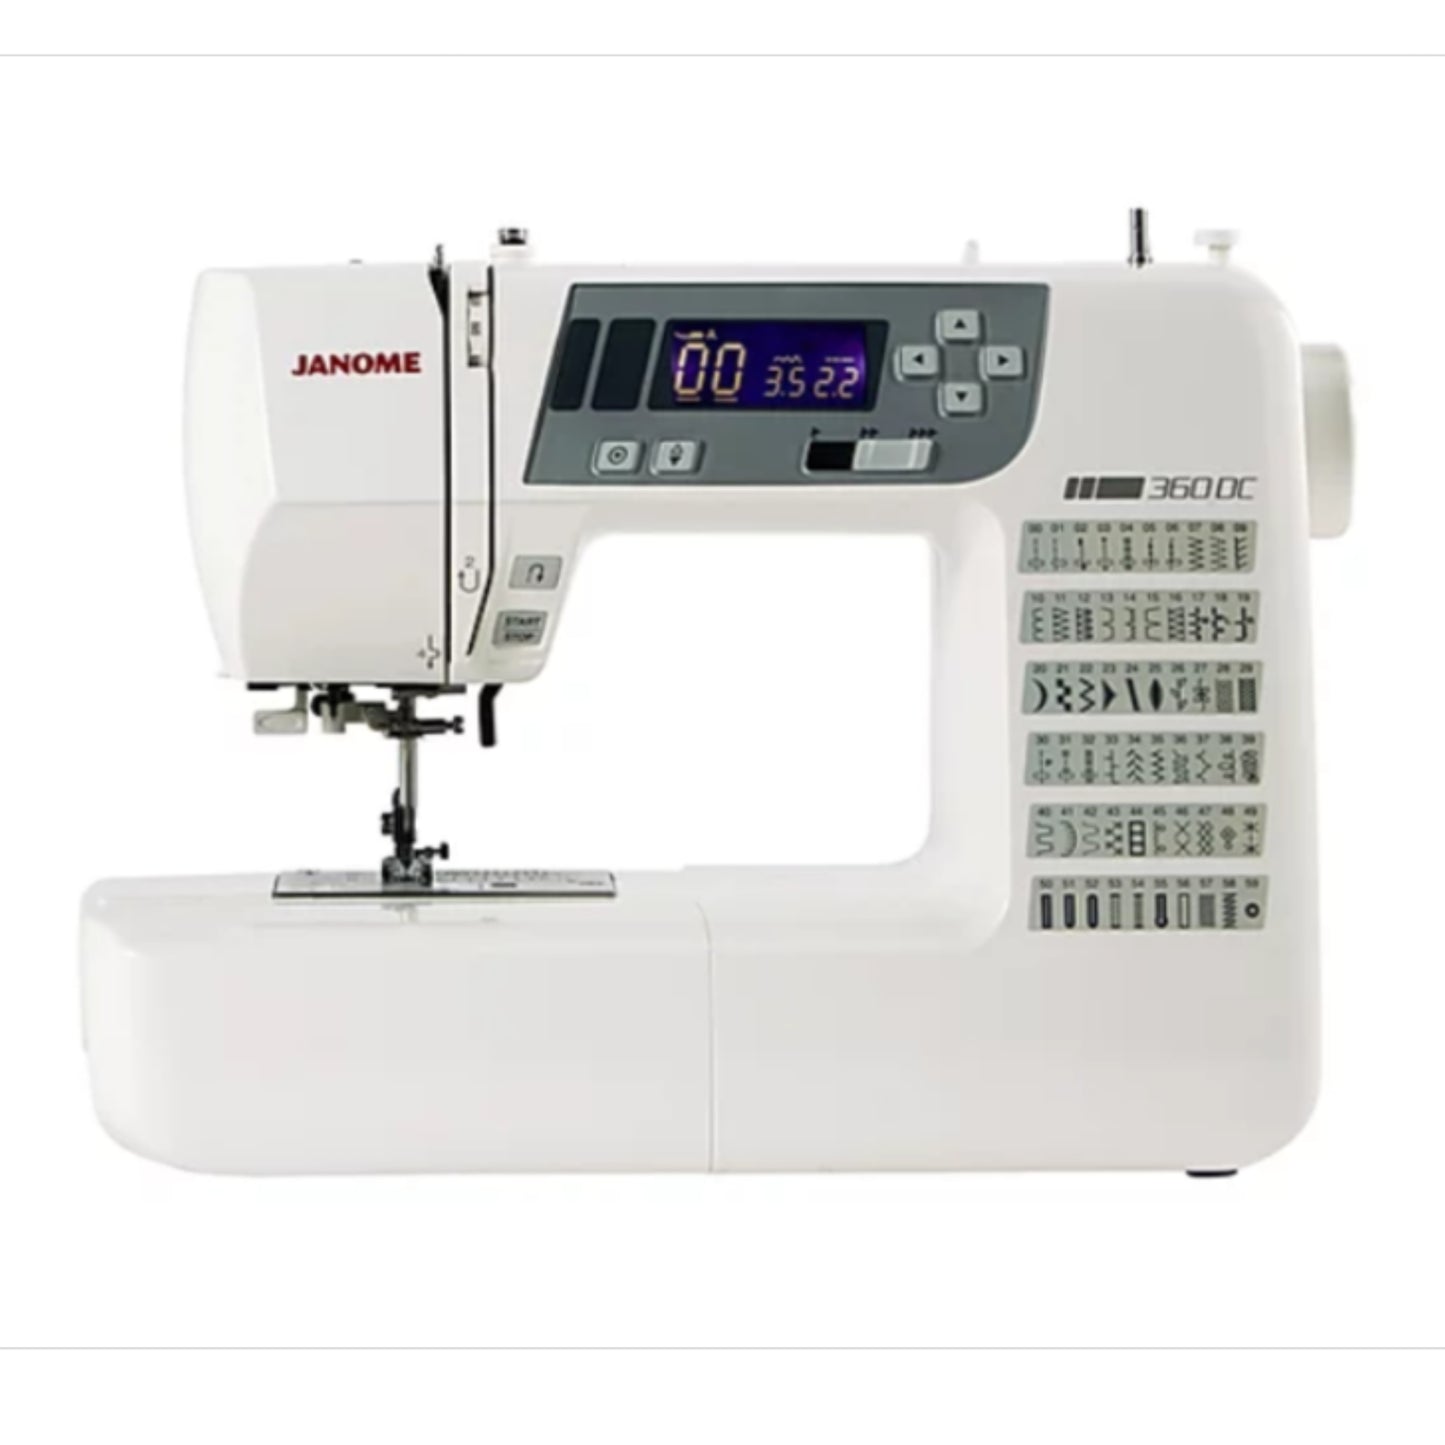 Janome 360DC sewing machine